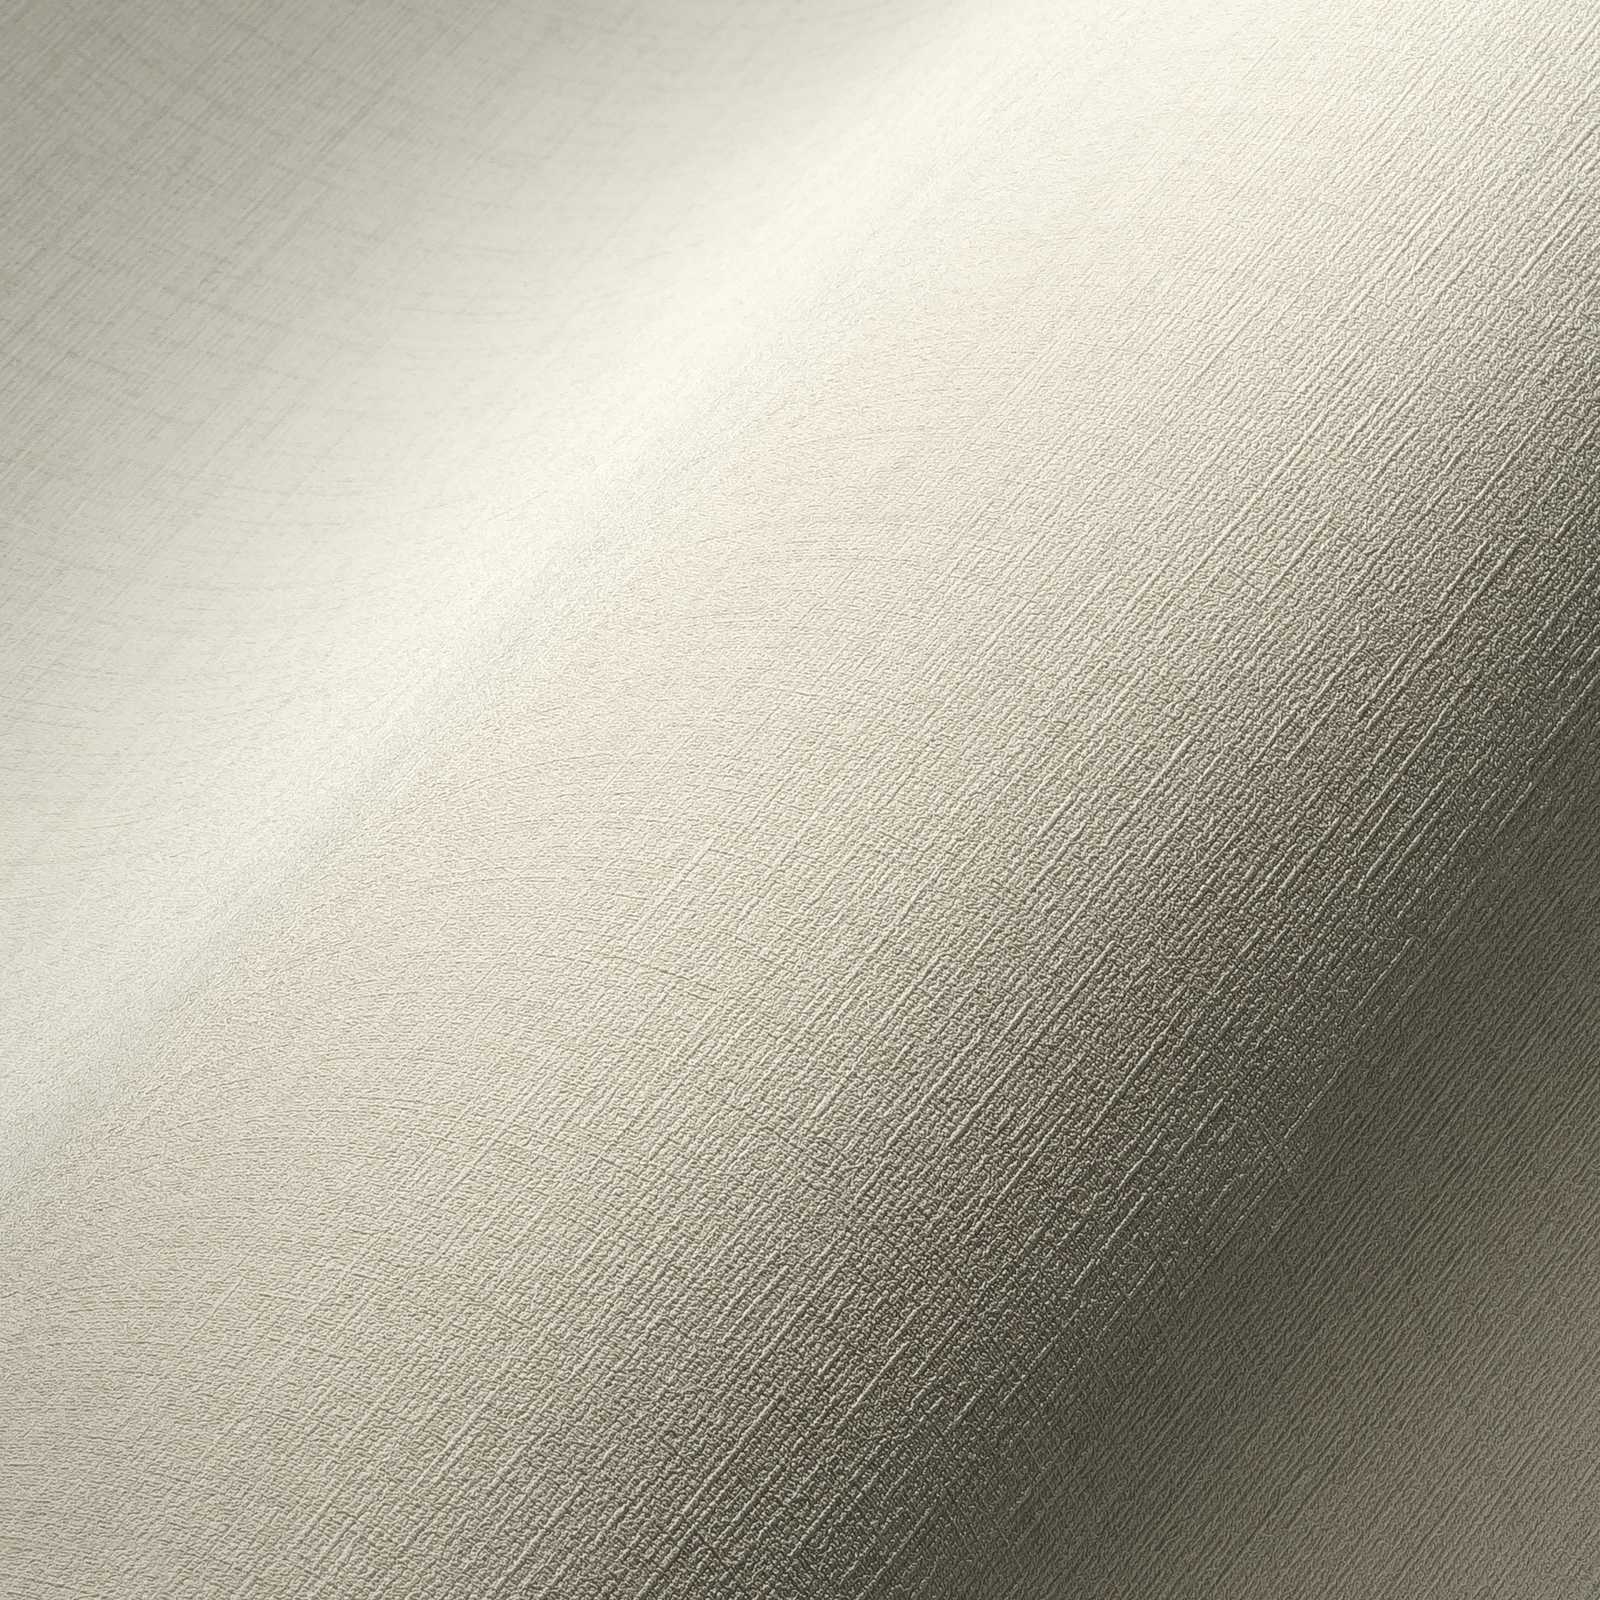             Creme-wit behang met textiel look & textuur effect
        